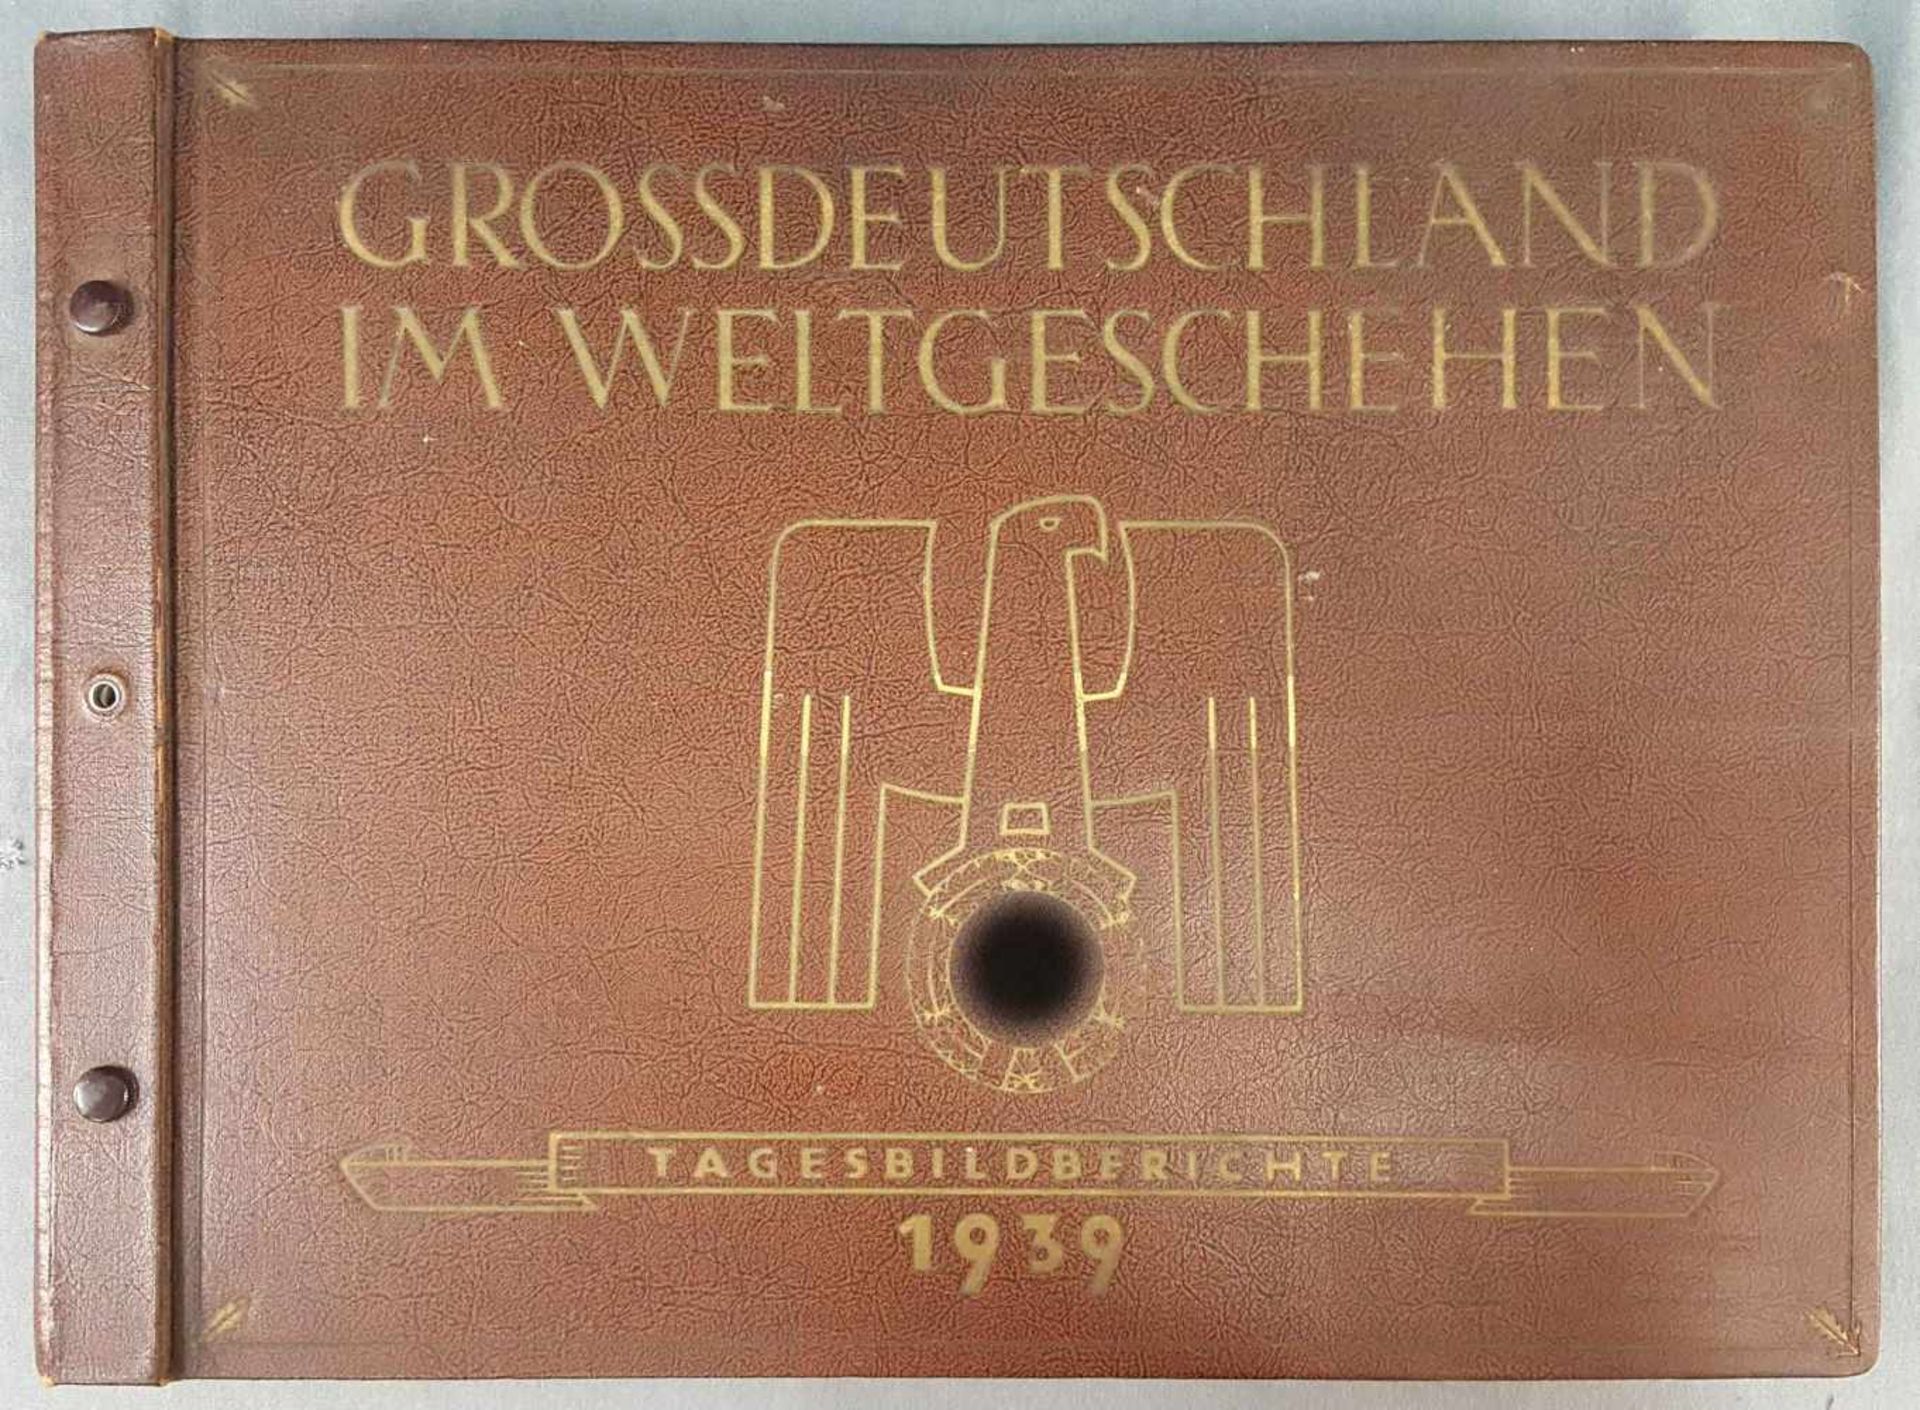 "GROSSDEUTSCHLAND IM WELTGESCHEHEN, Tagesbildberichte 1939".